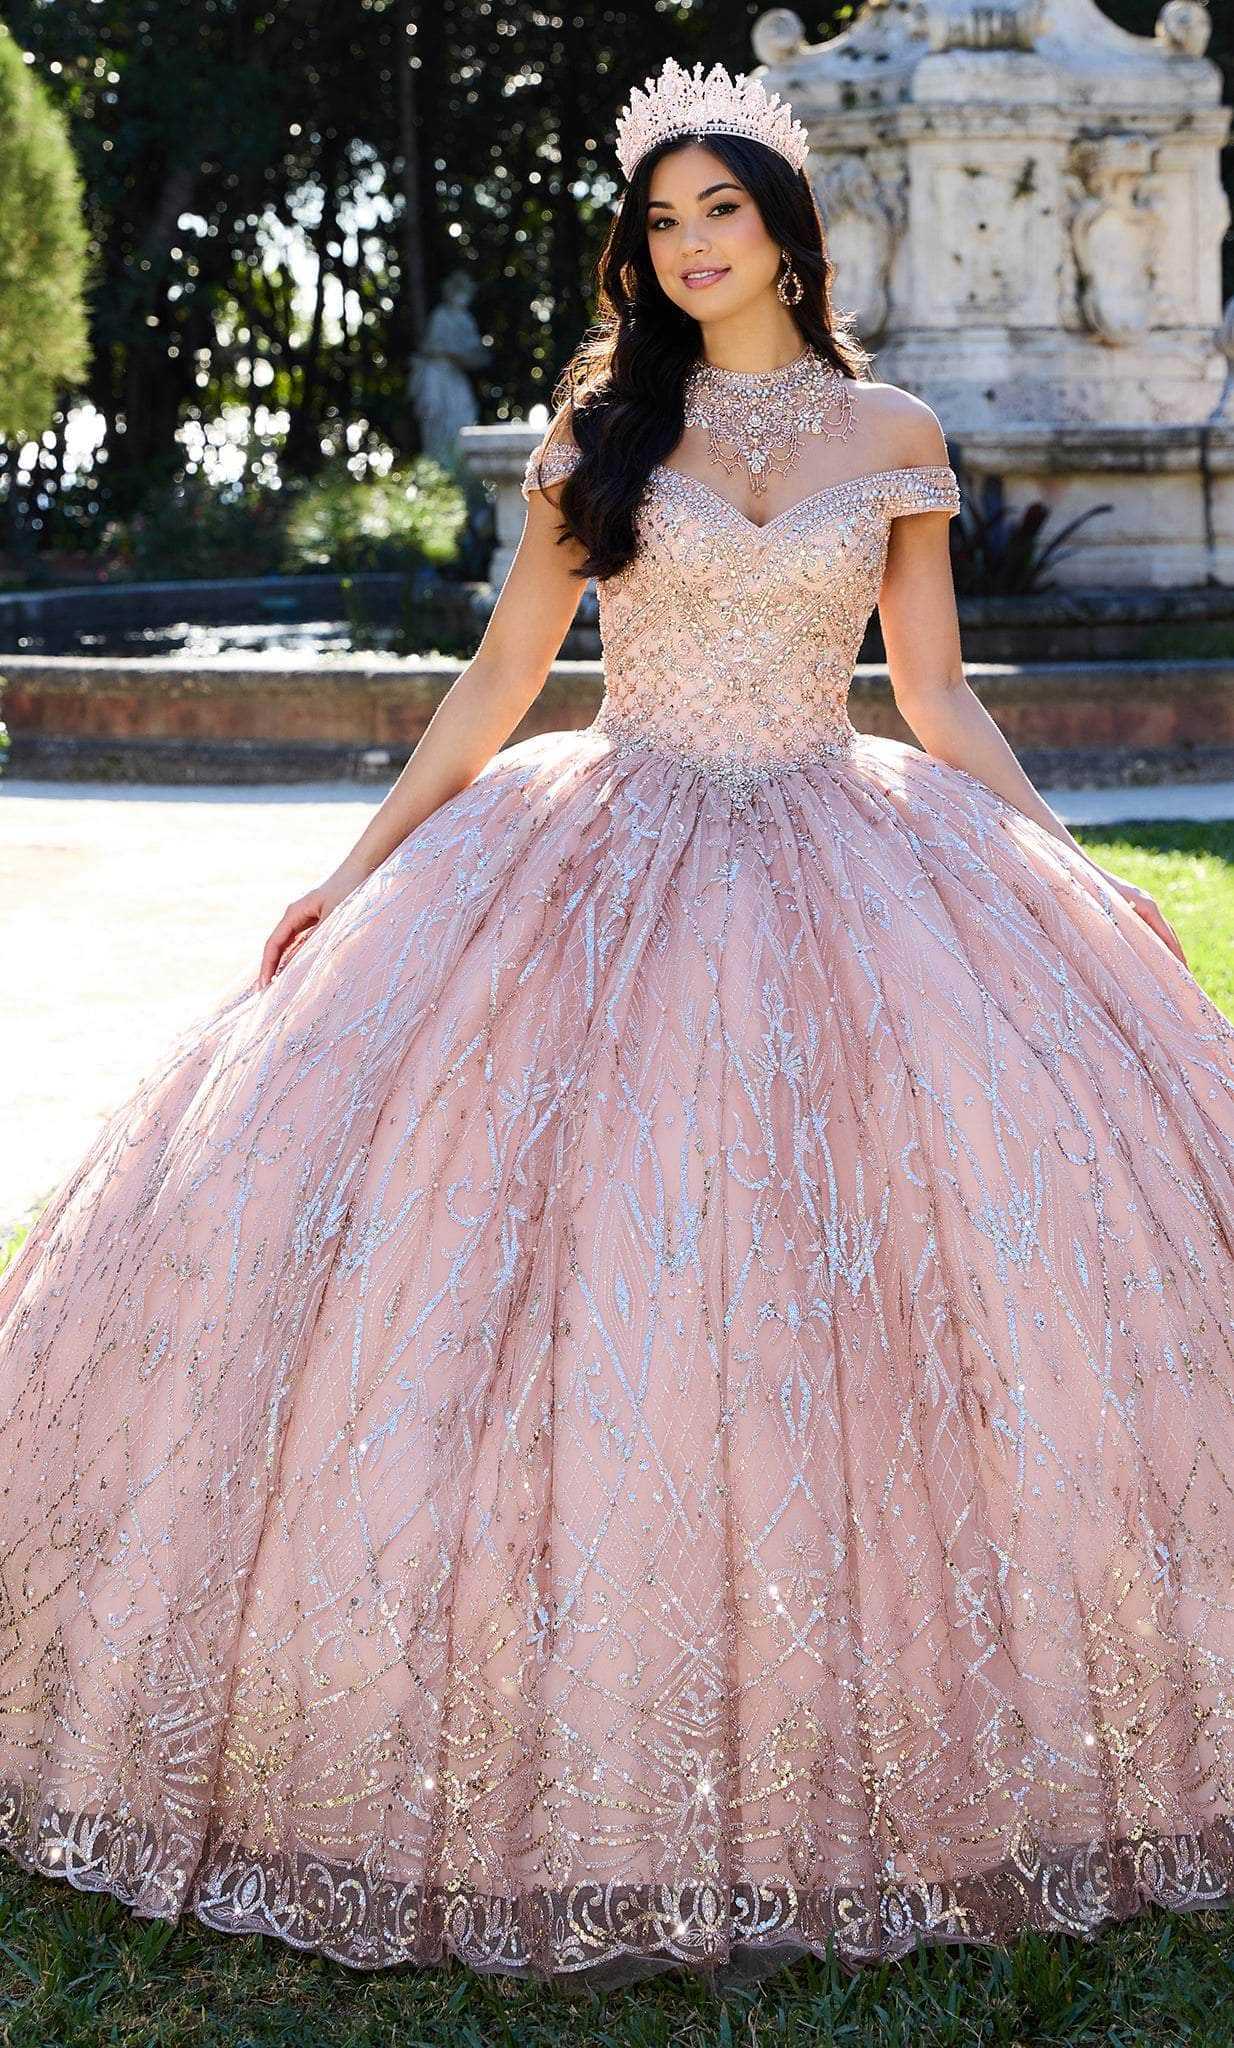 Princesa by Ariana Vara, Princesa by Ariana Vara PR30132 - Rhinestone-Detailed Quinceanera Gown